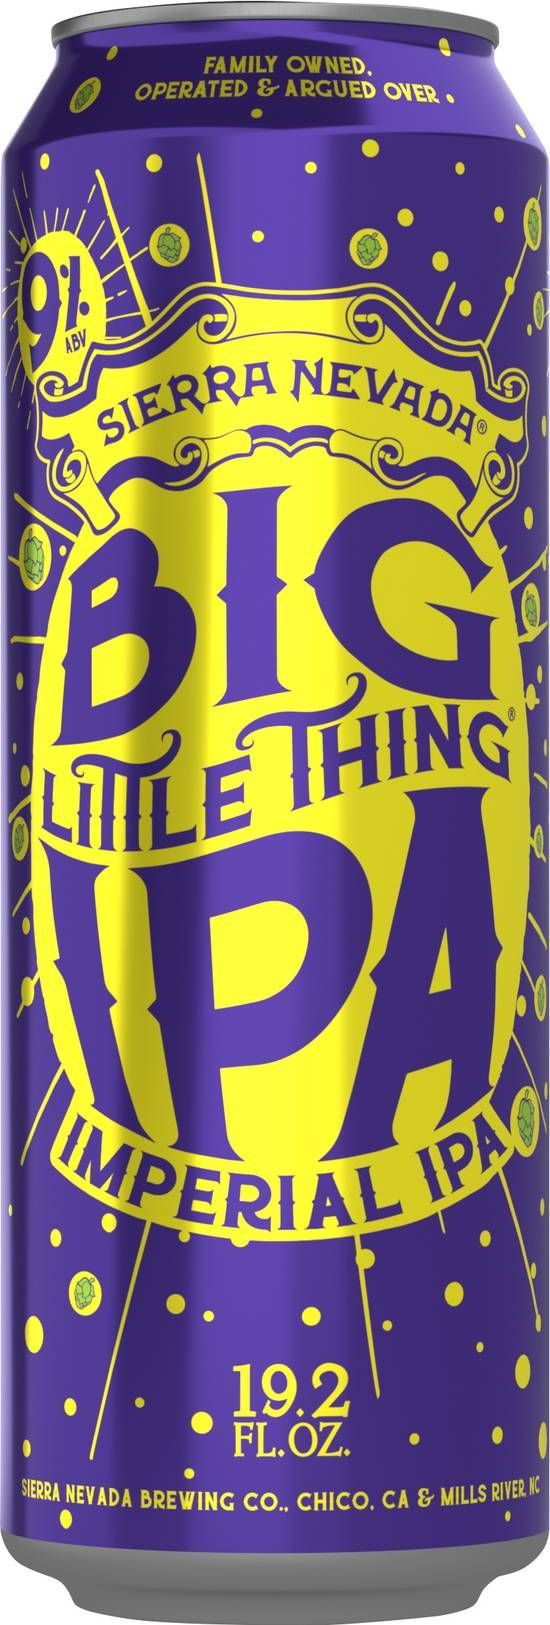 Sierra Nevada Big Little Thing Imperial Ipa Beer (19.2 fl oz)